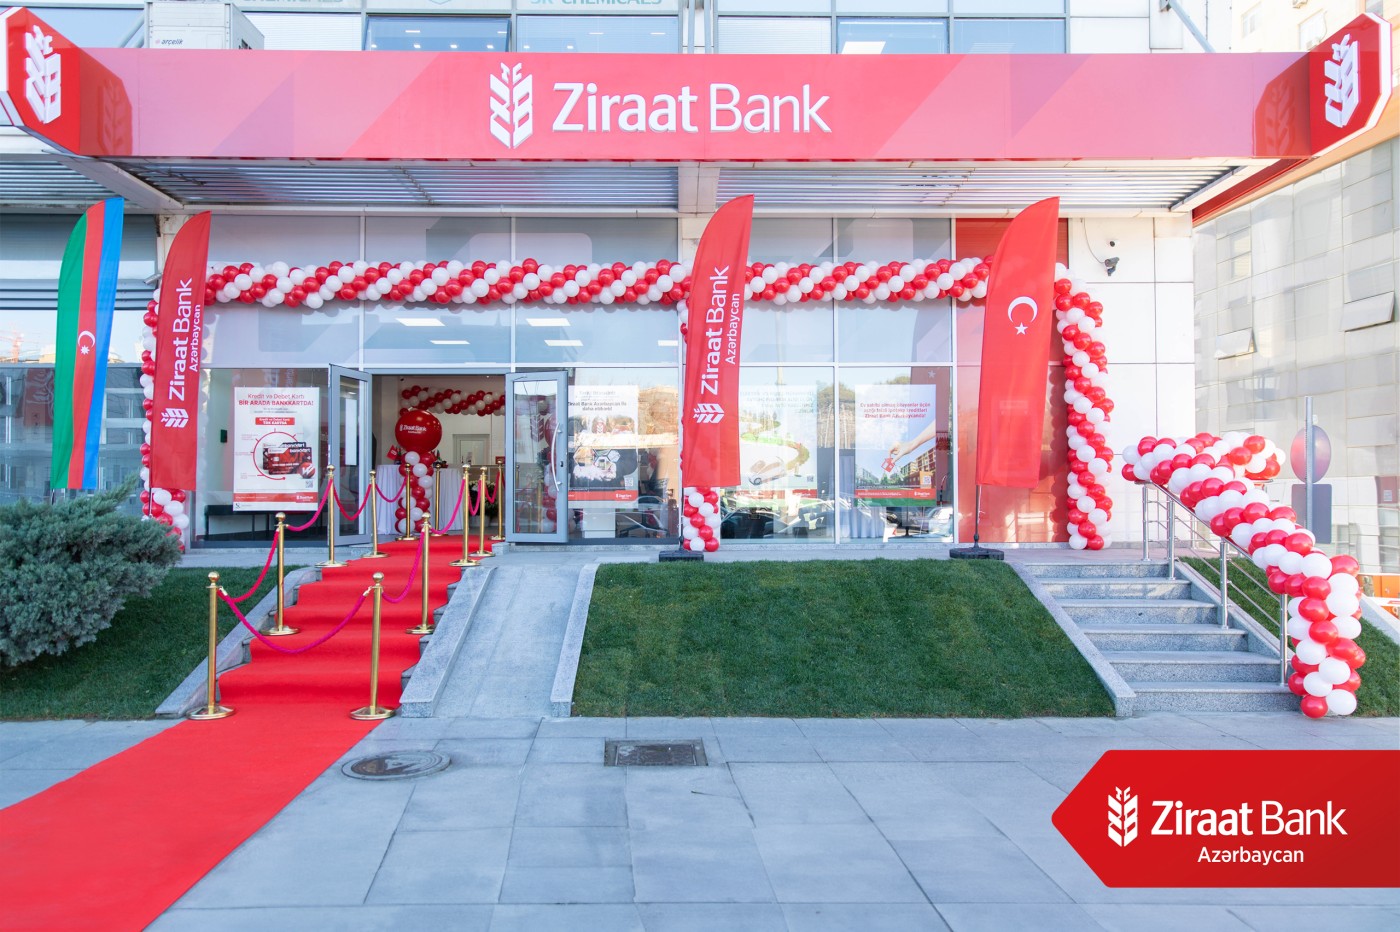 "Ziraat Bank Azərbaycan" Bakının Babək prospektində sayca 8-ci filialının açılışını ETDİ - FOTOLAR